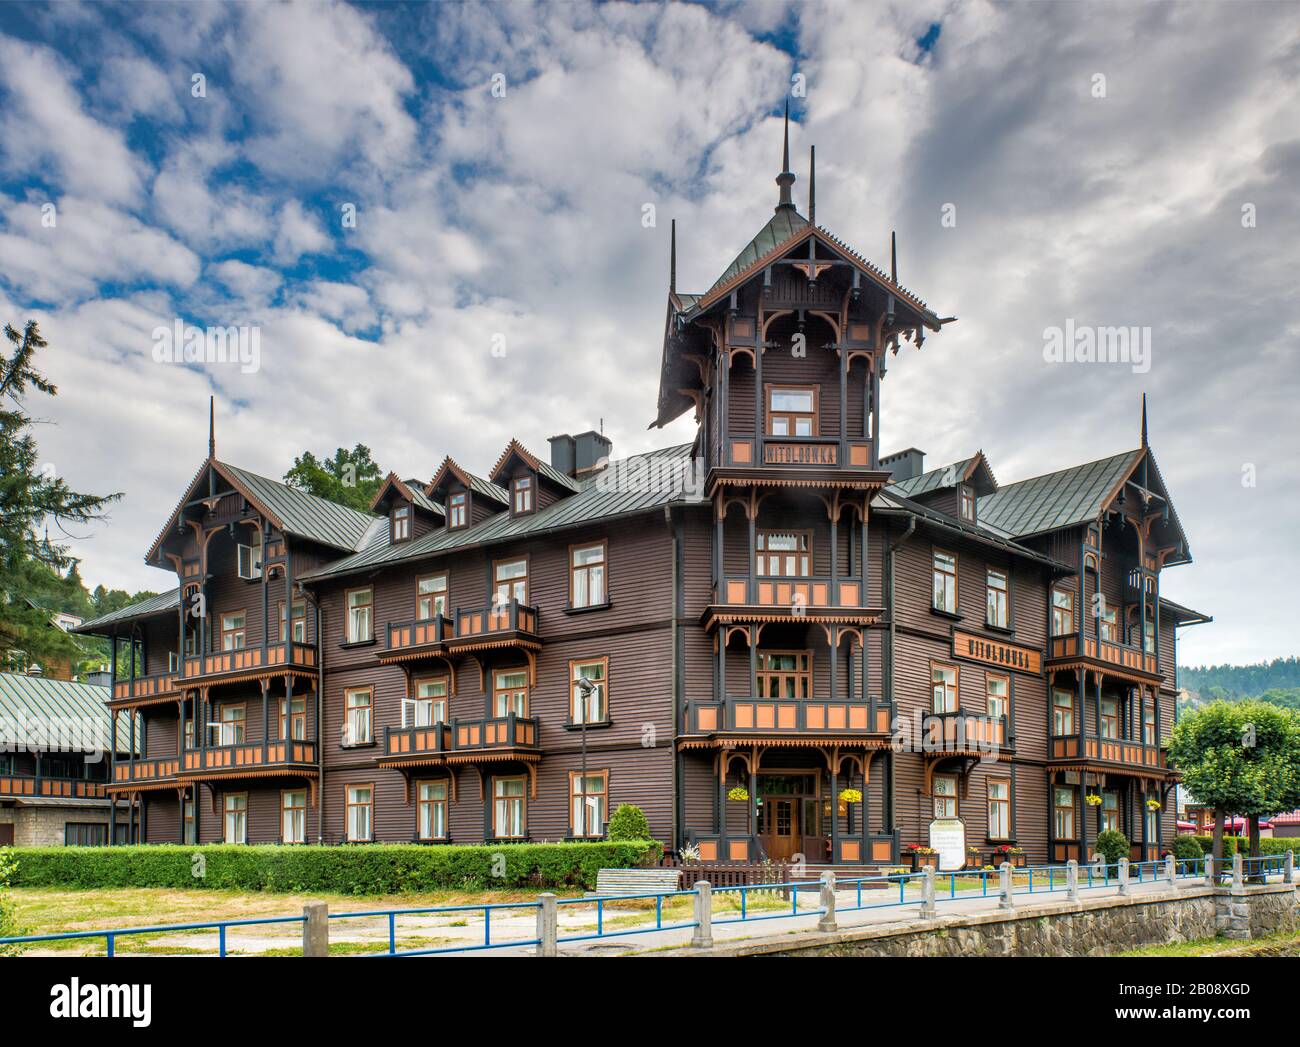 Pensjonat Witollowka, 1888, storico albergo in legno ispirato allo stile svizzero chalet, pensione in Krynica Zdroj stazione termale, Malopolska, Polonia Foto Stock